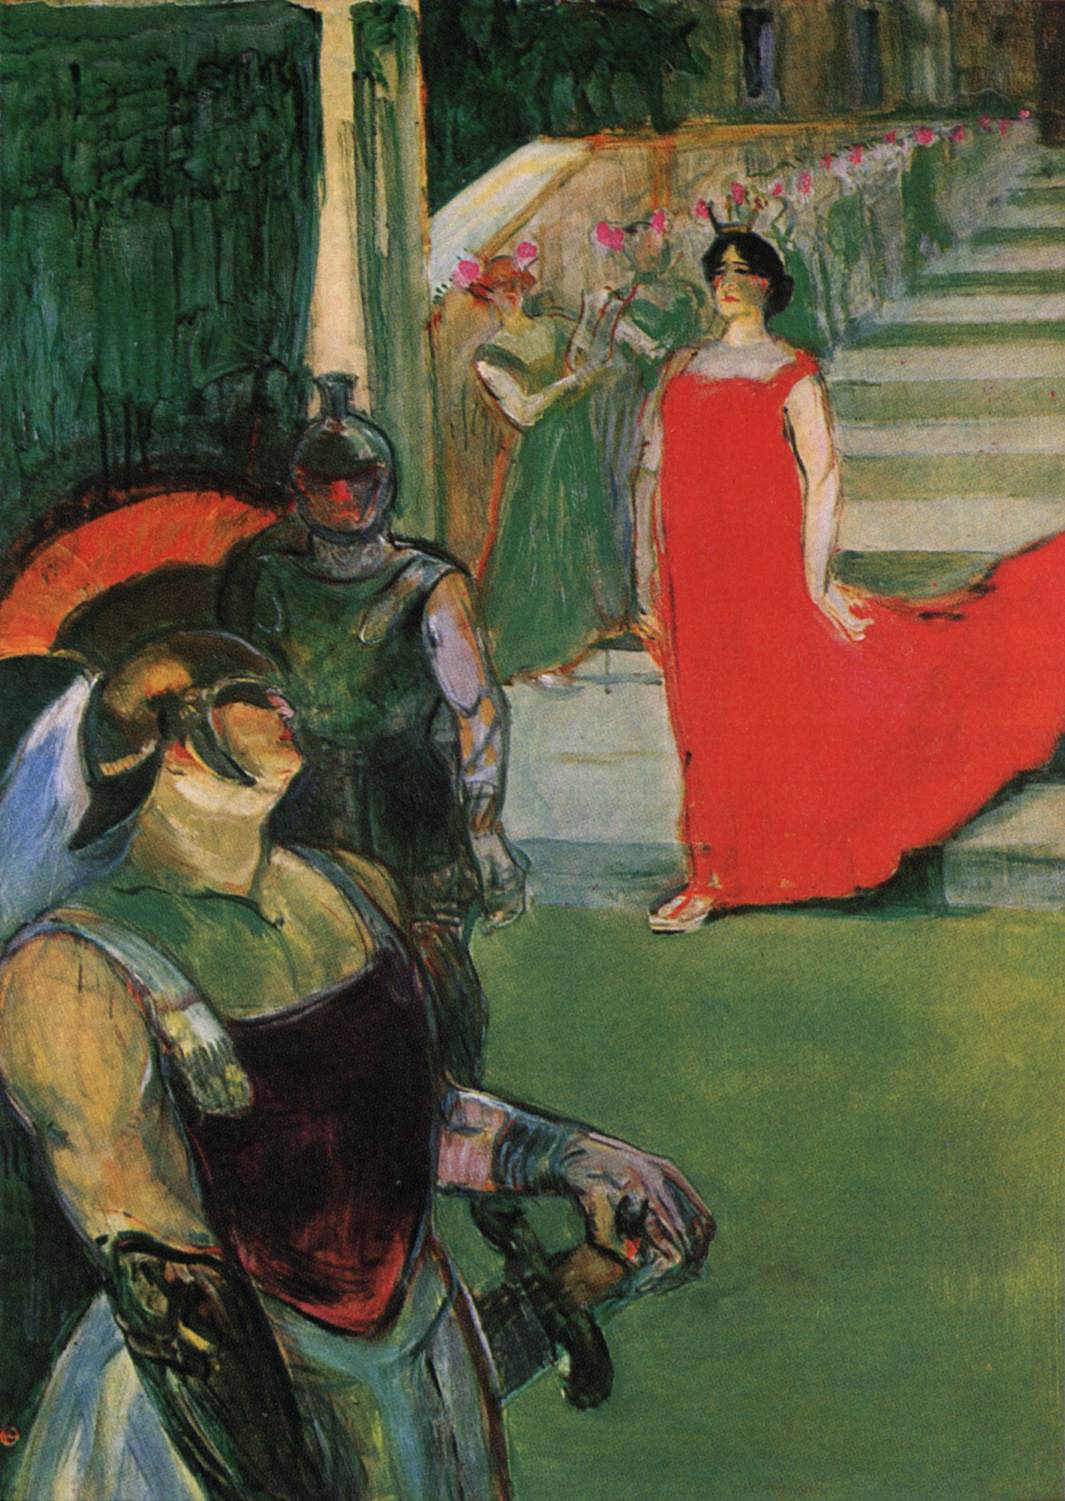 Messalina schodzi po schodach wyłożonych postaciami żeńskimi